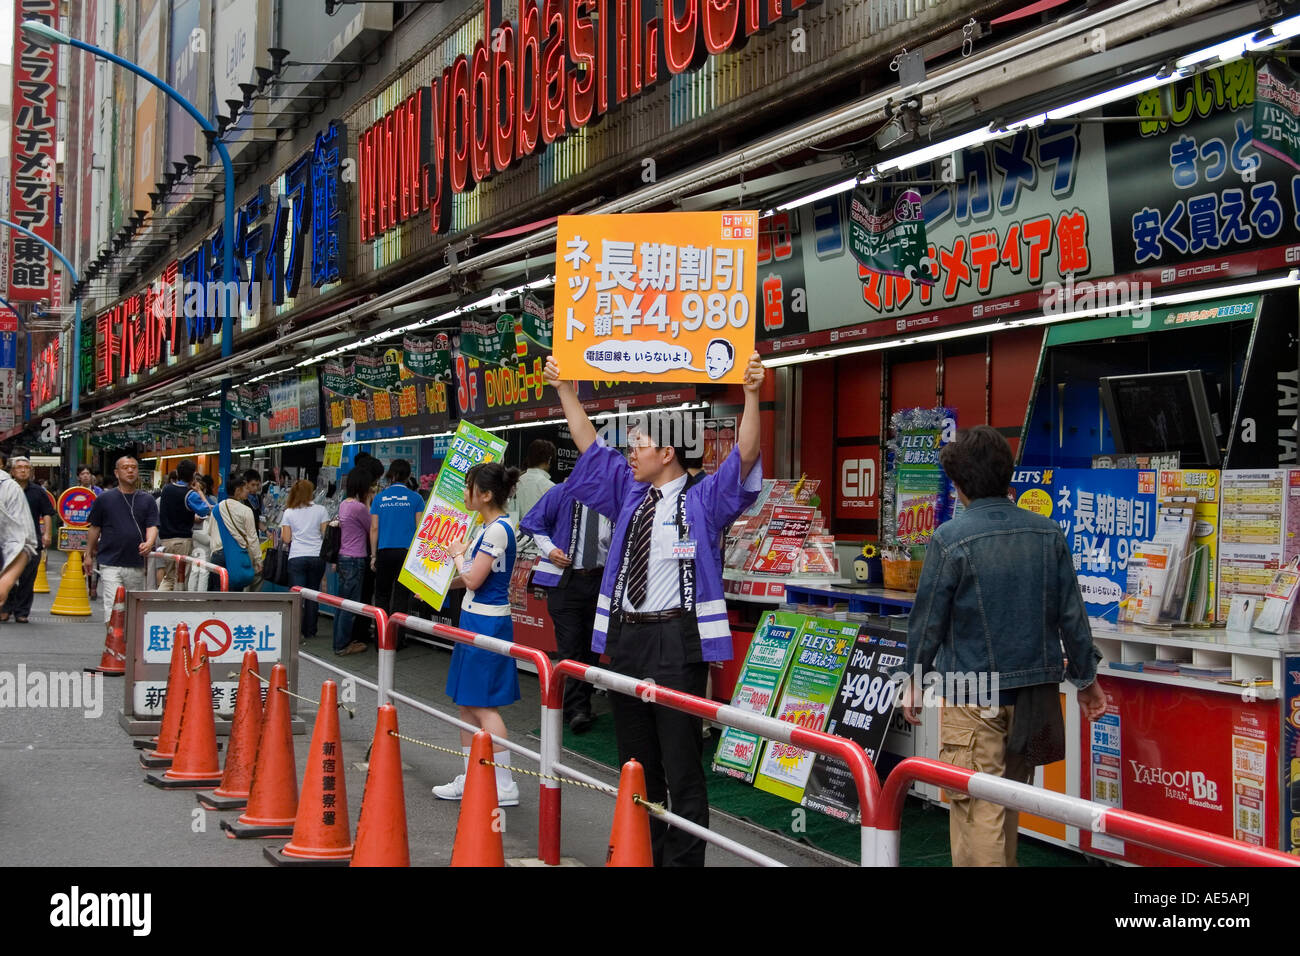 La surcharge visuelle des signes japonais et gens tenant des pancartes de publicité des produits dans un magasin d'électronique à Shinjuku Tokyo Japon Banque D'Images